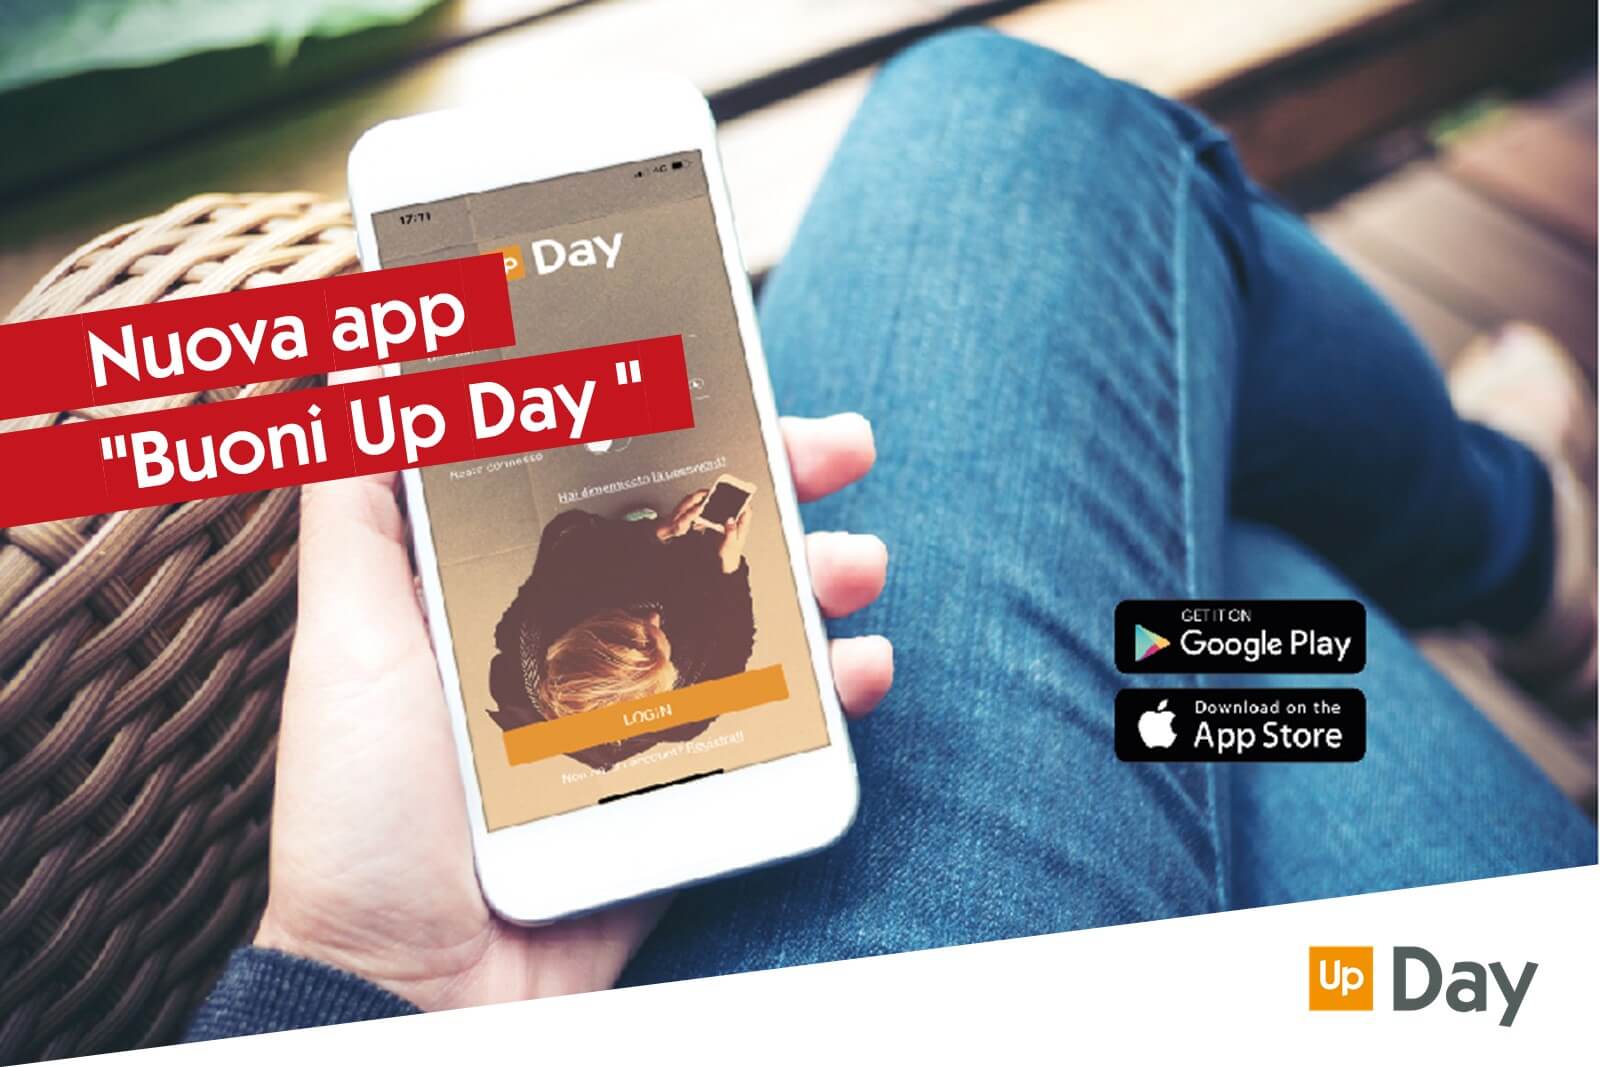 Nuova app “Buoni Up Day” e nuovo portale